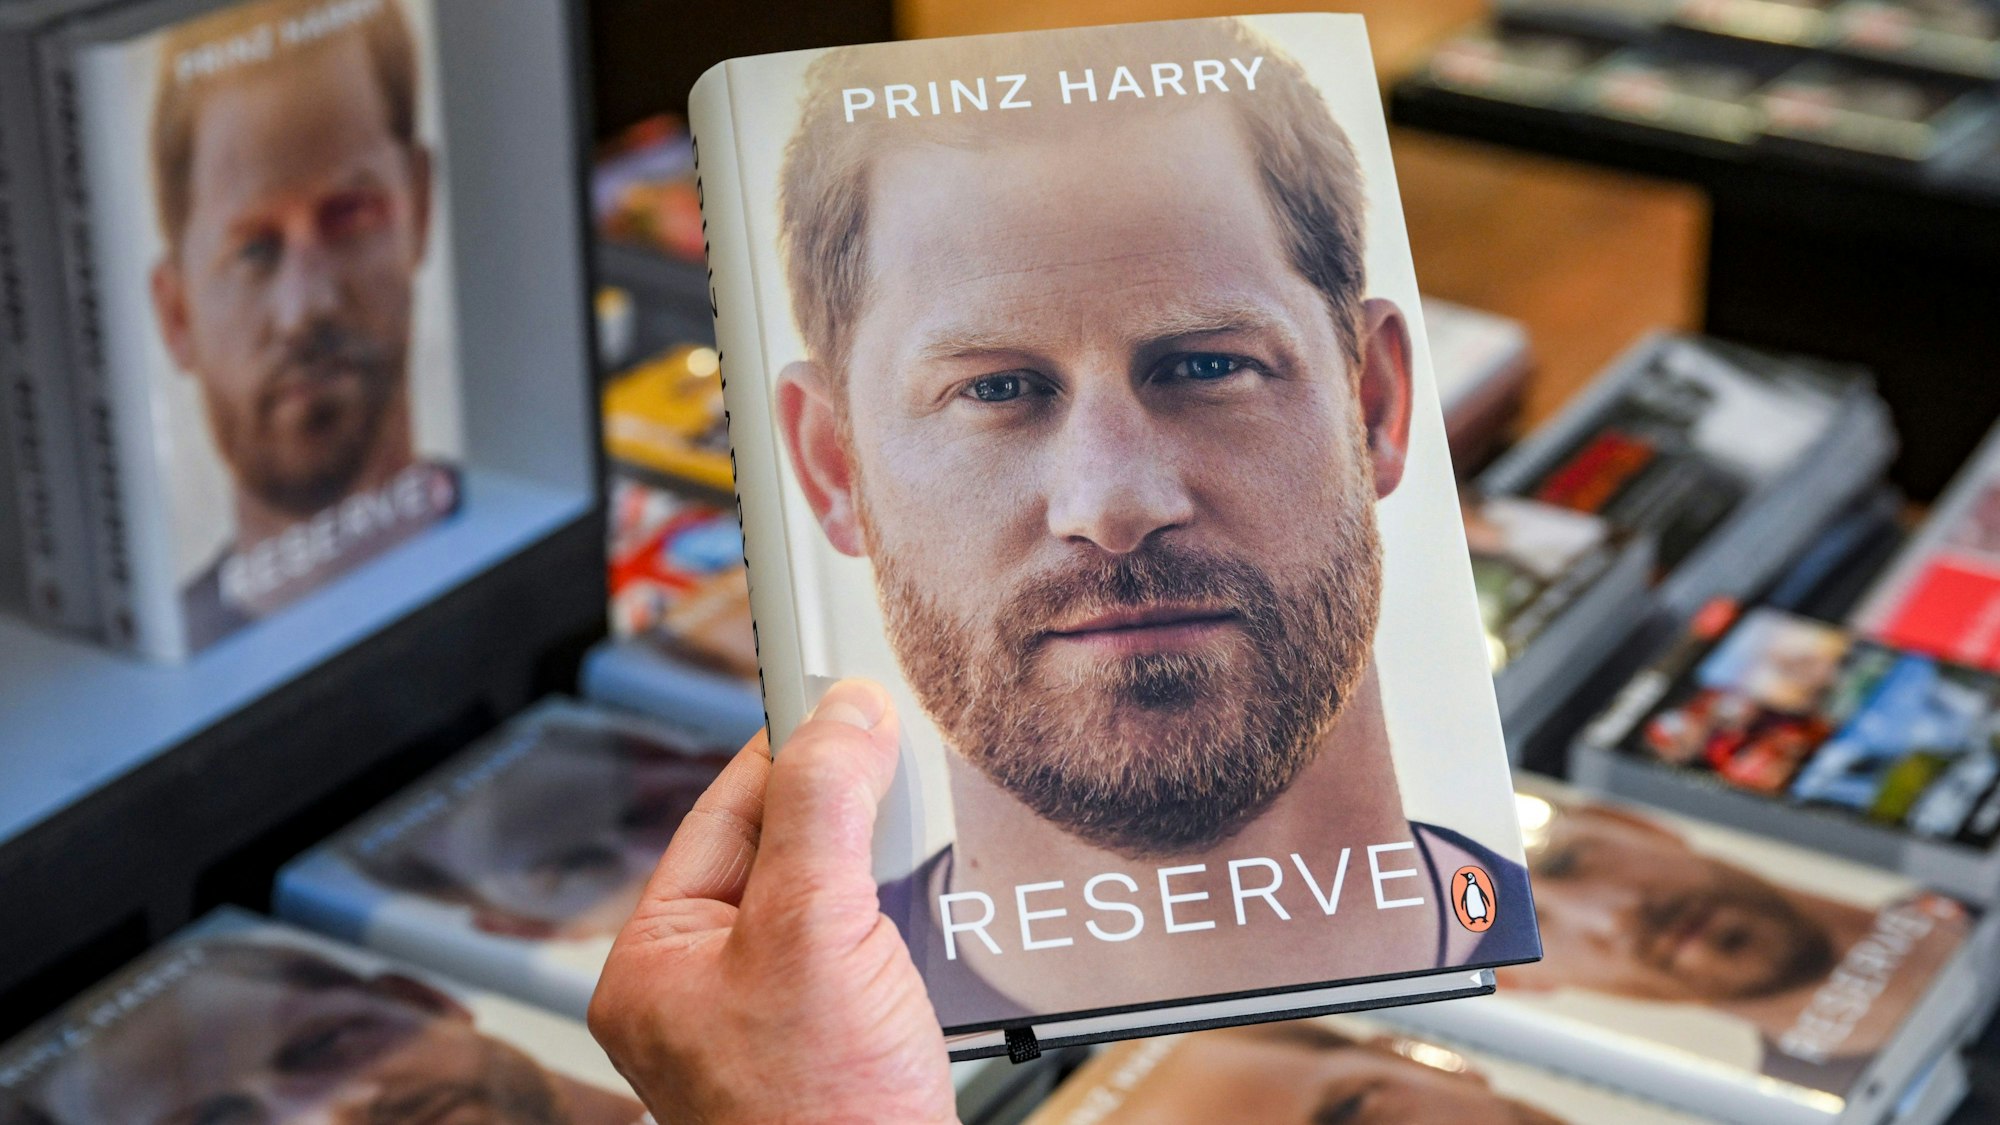 Die Biografie von Prinz Harry, „Spare“, liegt im Kulturkaufhaus Dussmann zum Verkauf bereit.